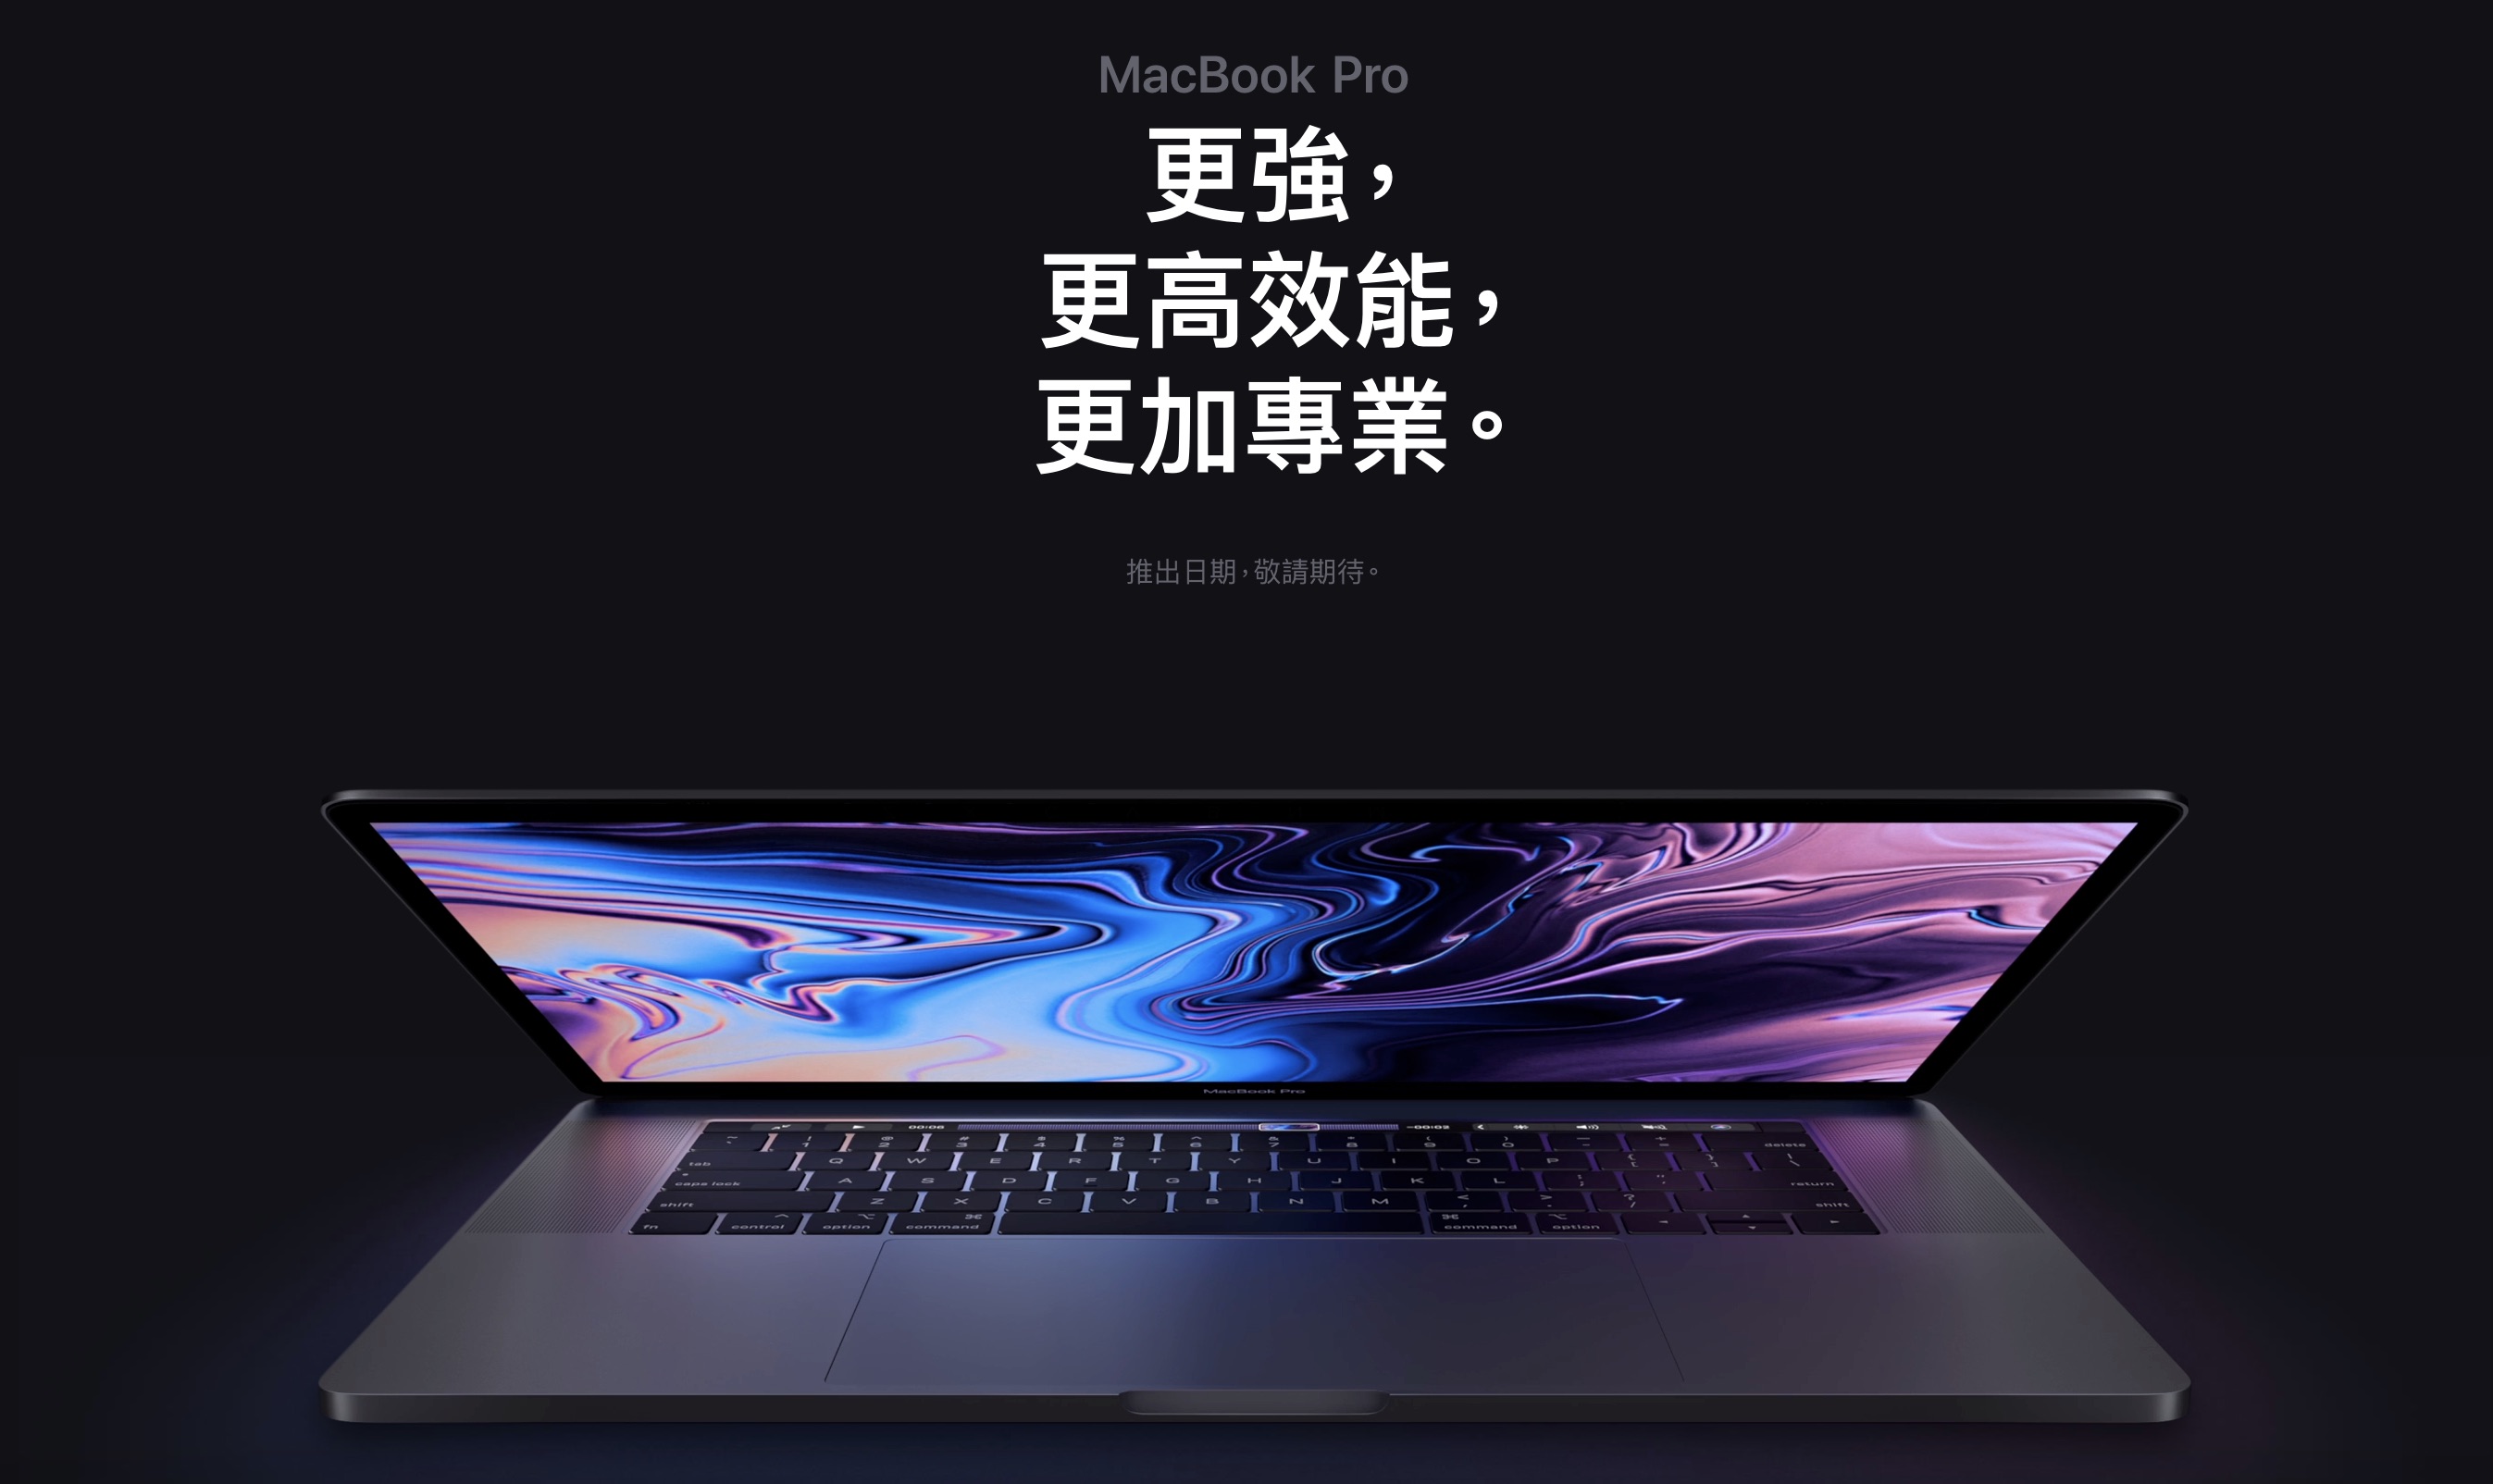 Apple 更新 MacBook Pro 系列筆電搭載第 9 代 Intel Core 處理器，自訂規格售價看這裡